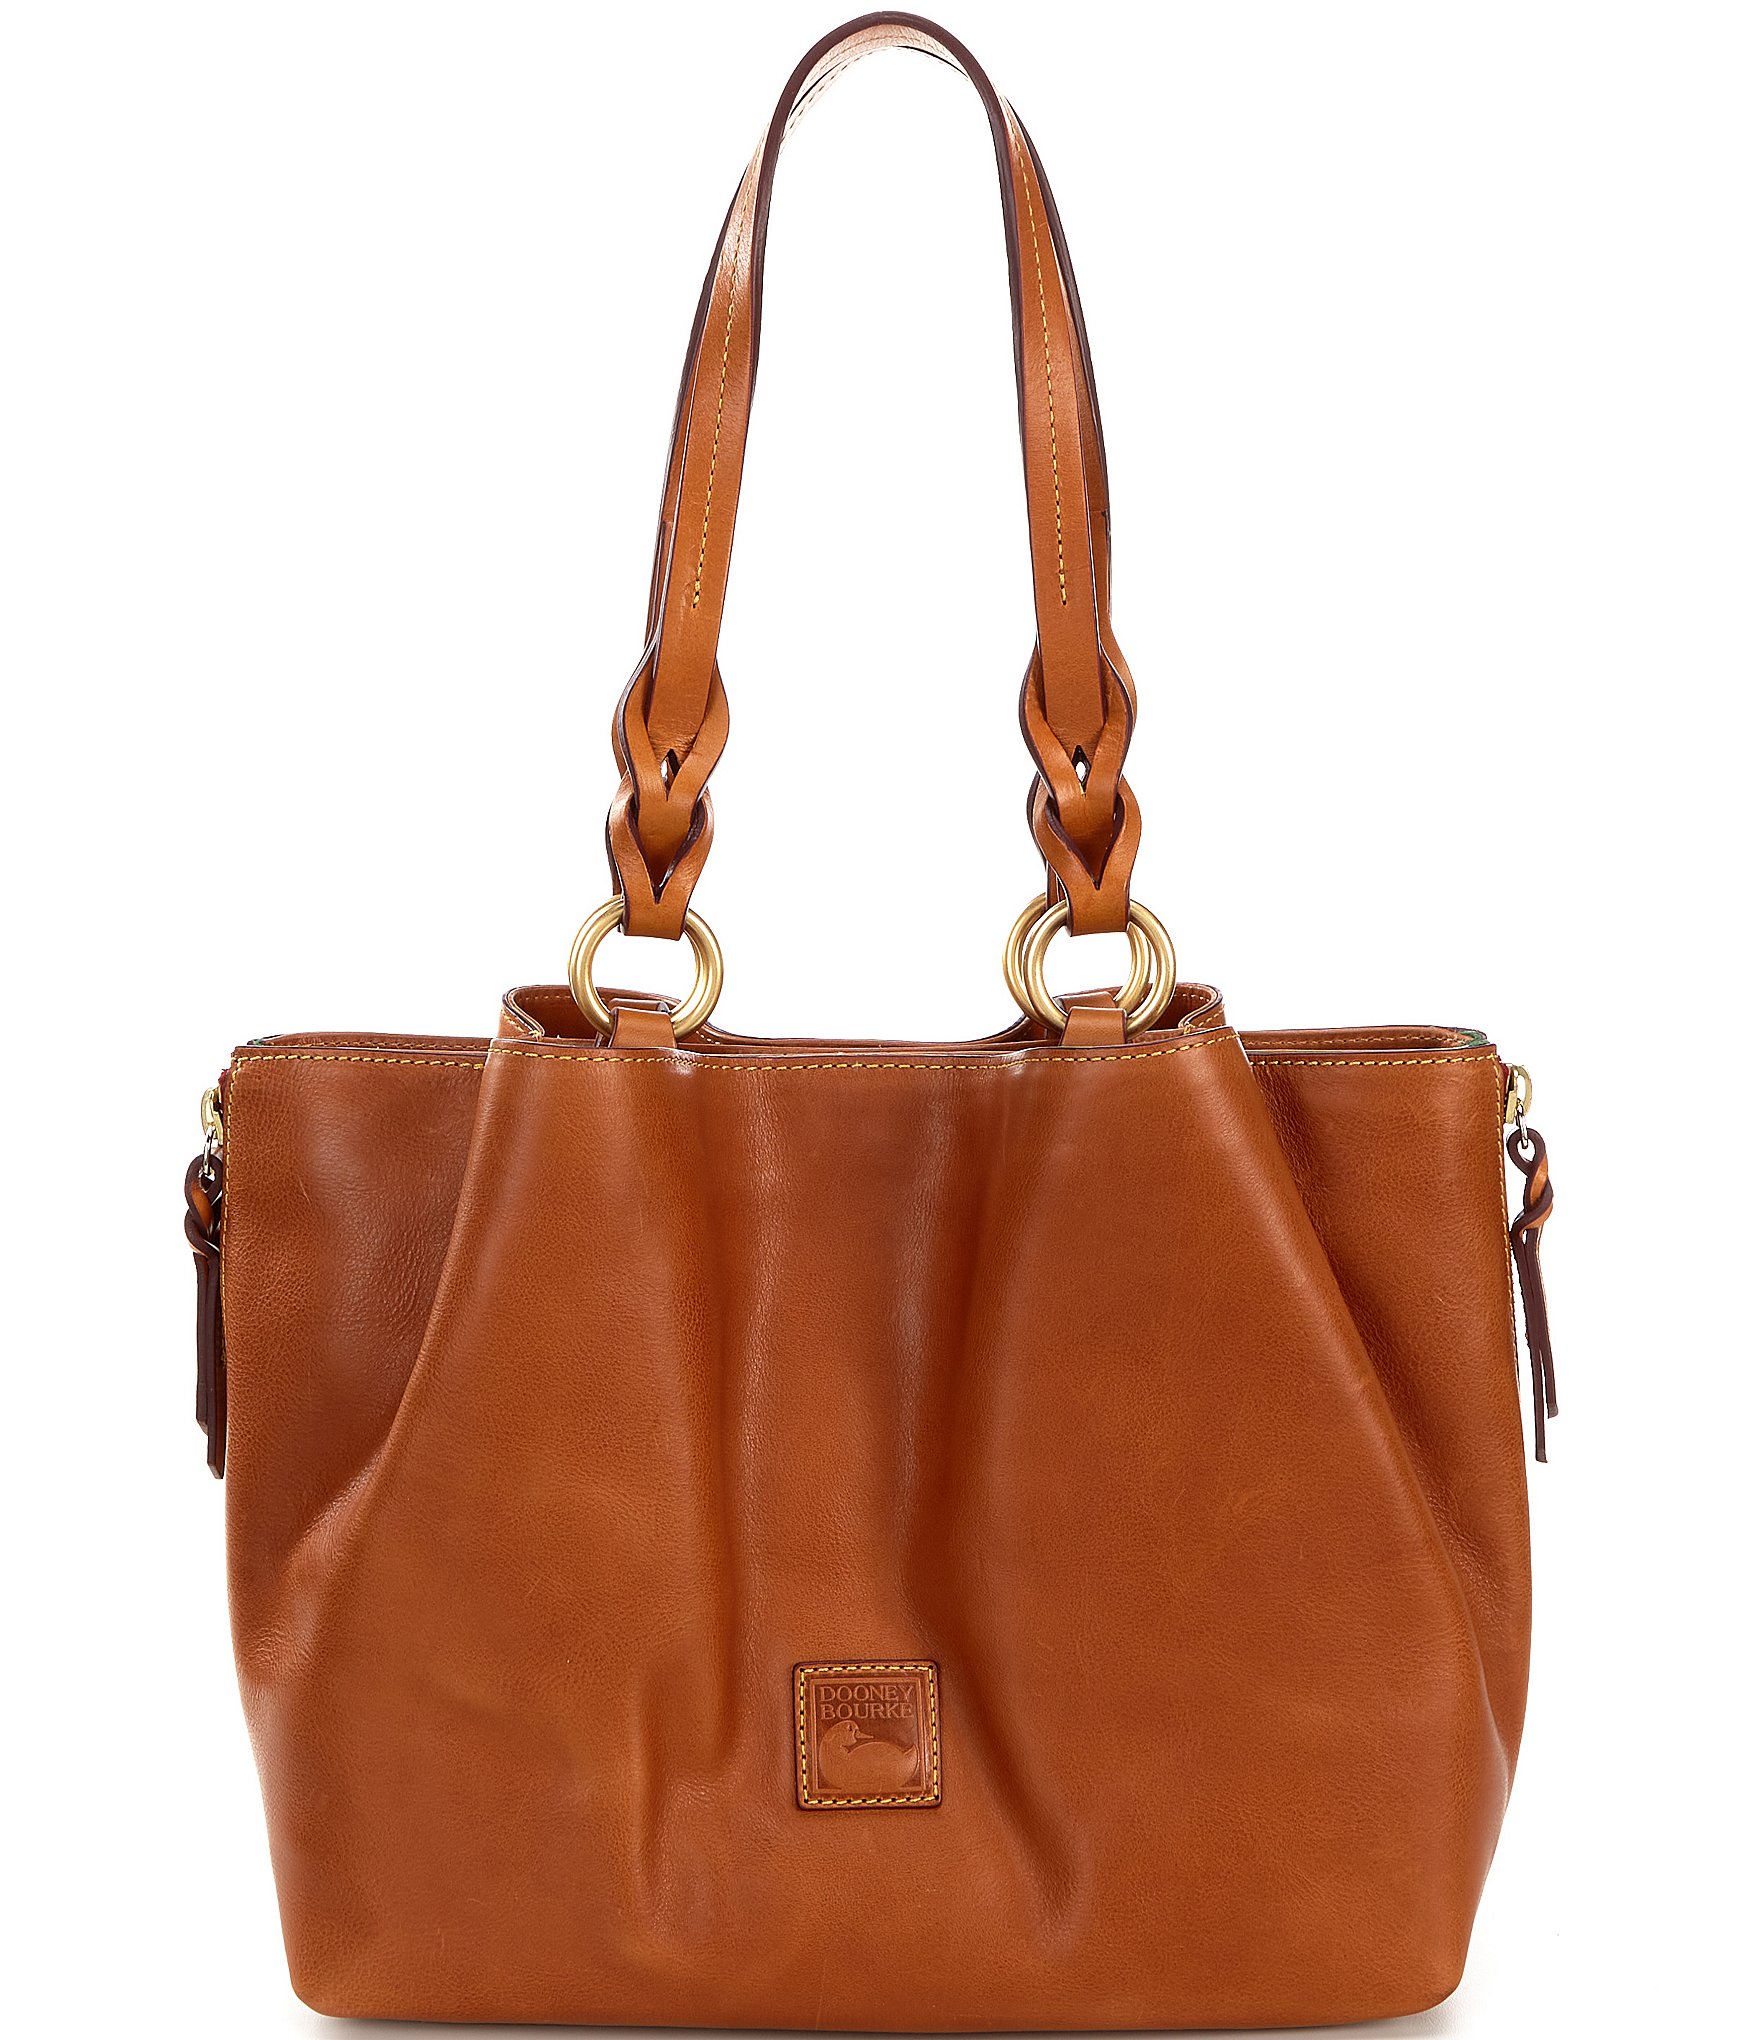 Sale & Clearance Handbags, Purses & Wallets | Bags, Purses, Handbags